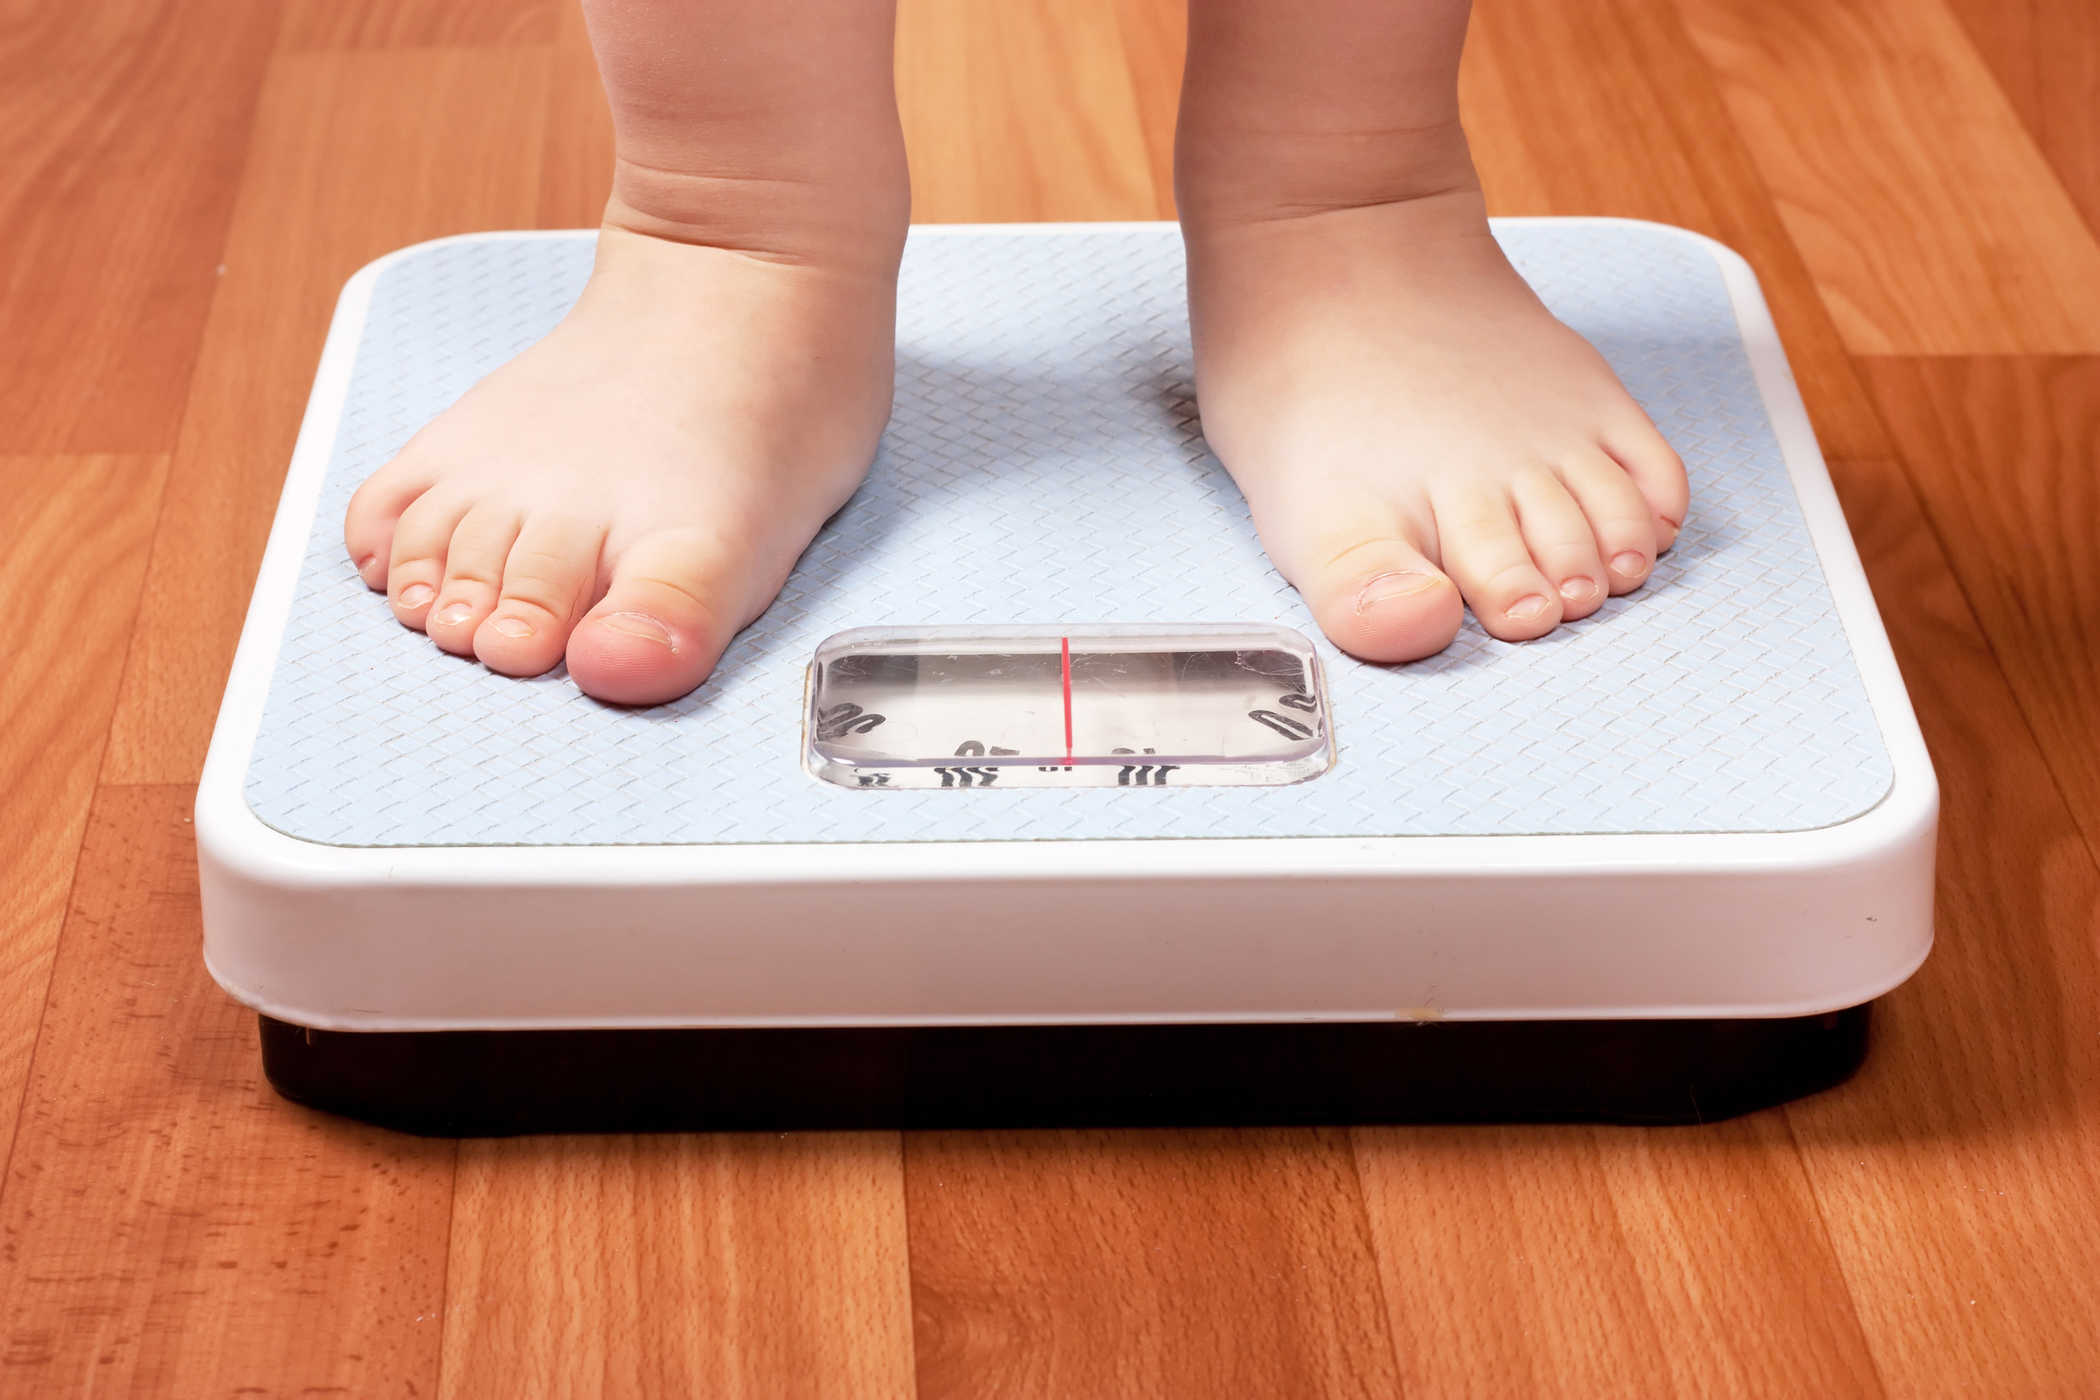 Báo động tình trạng thừa cân, béo phì ở TP HCM - Báo Người lao động